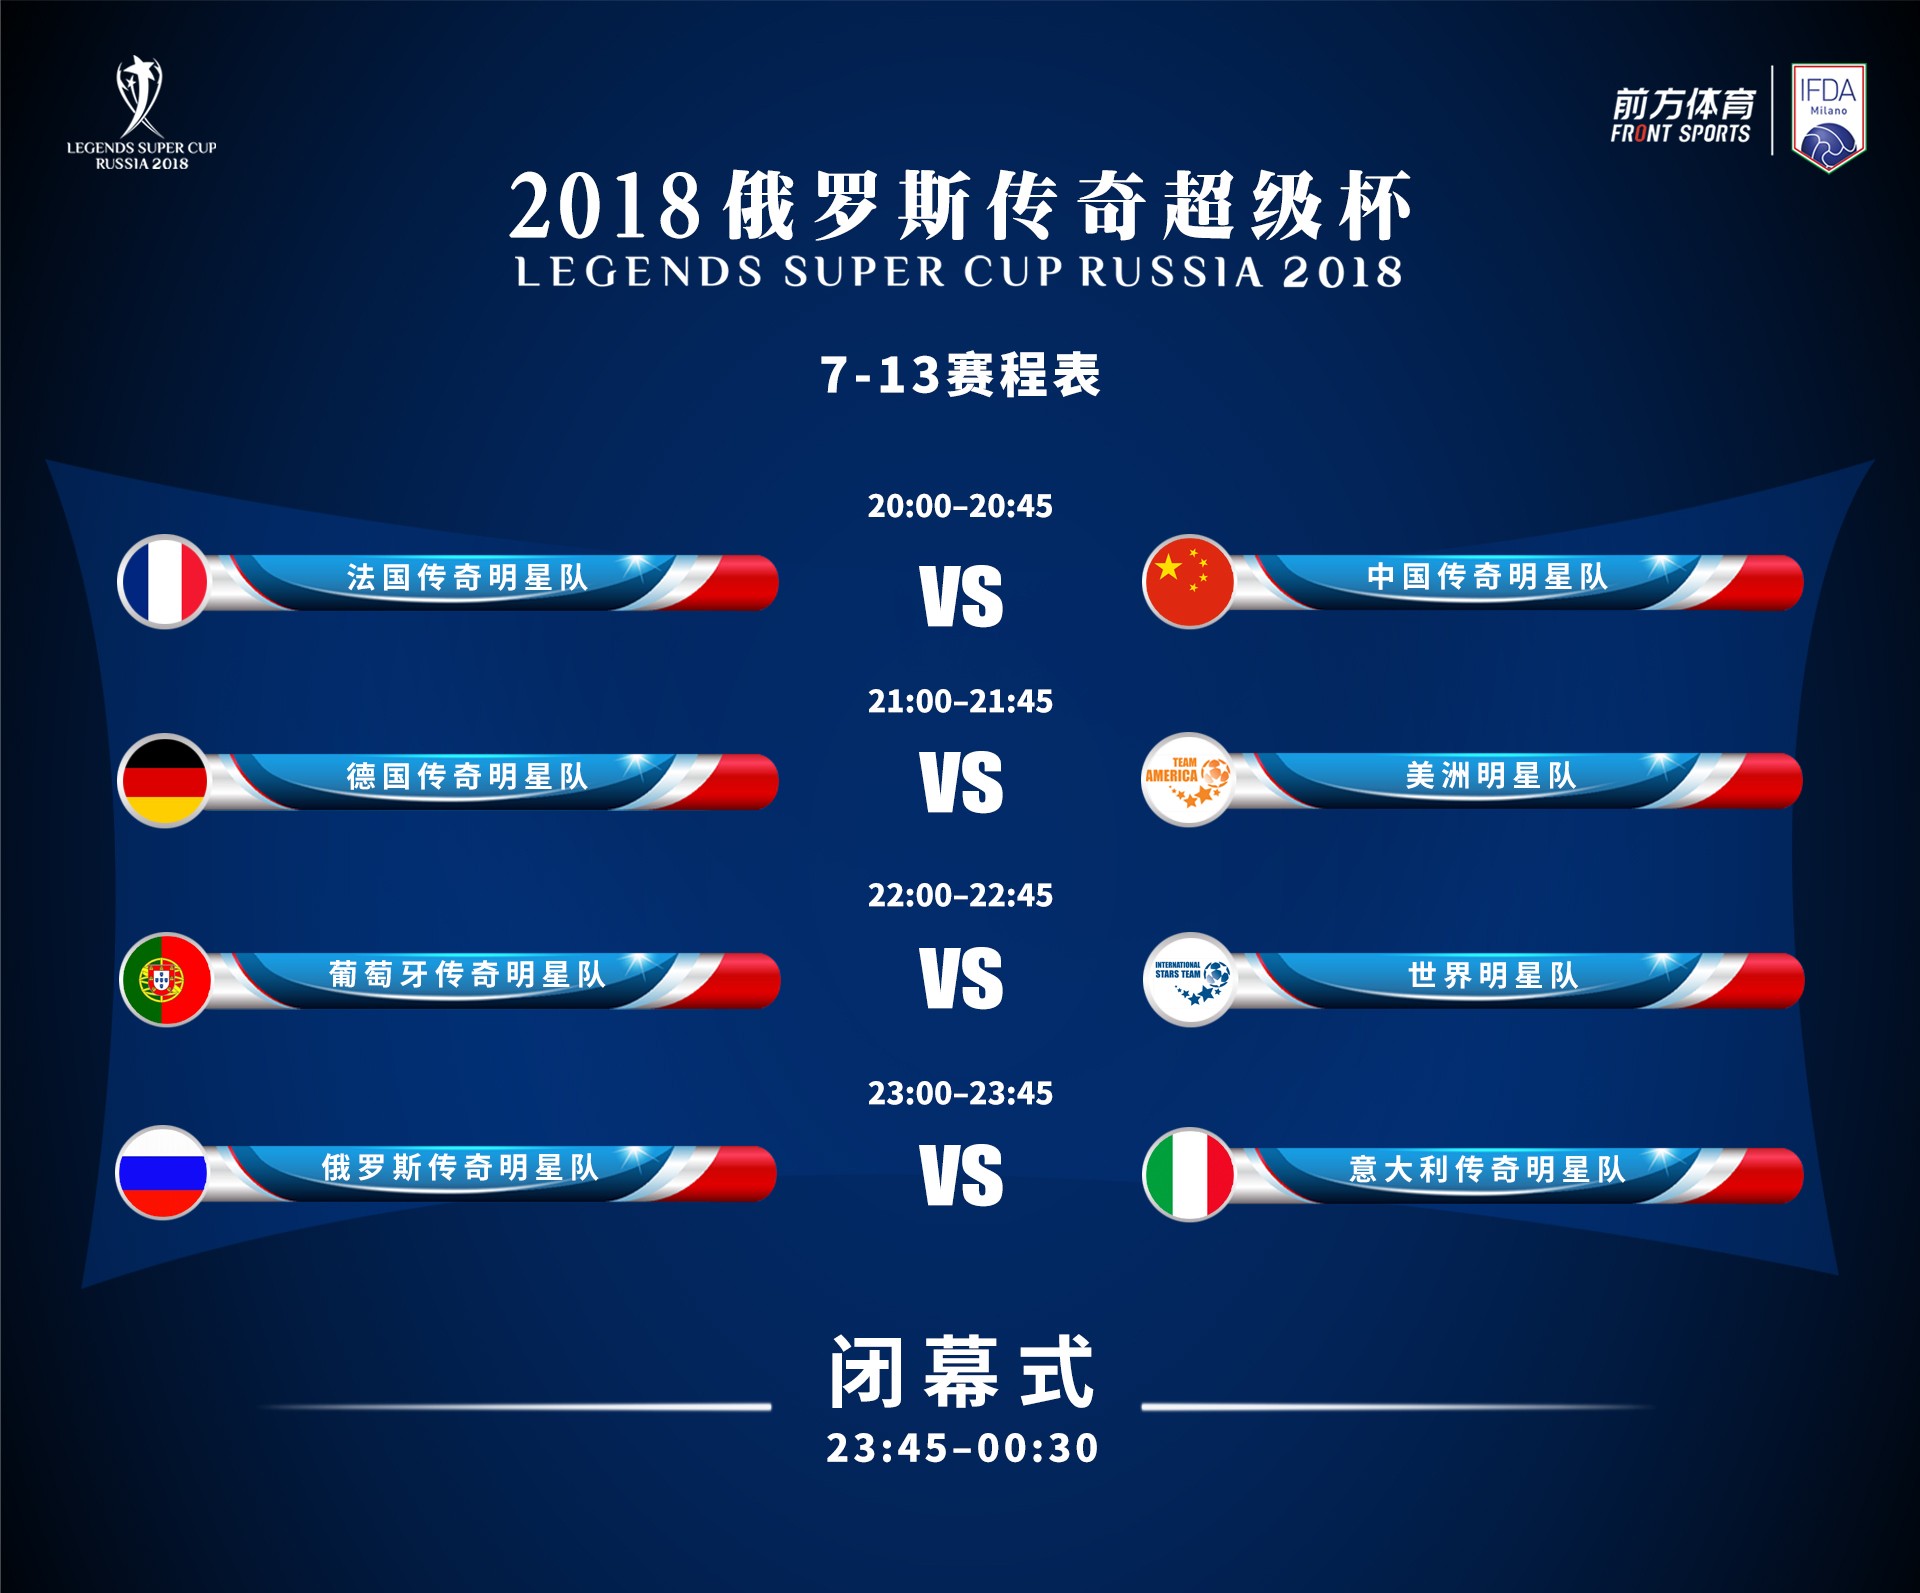 今晚八点，中国传奇队vs法国传奇队，分出传奇超级杯第7、8名